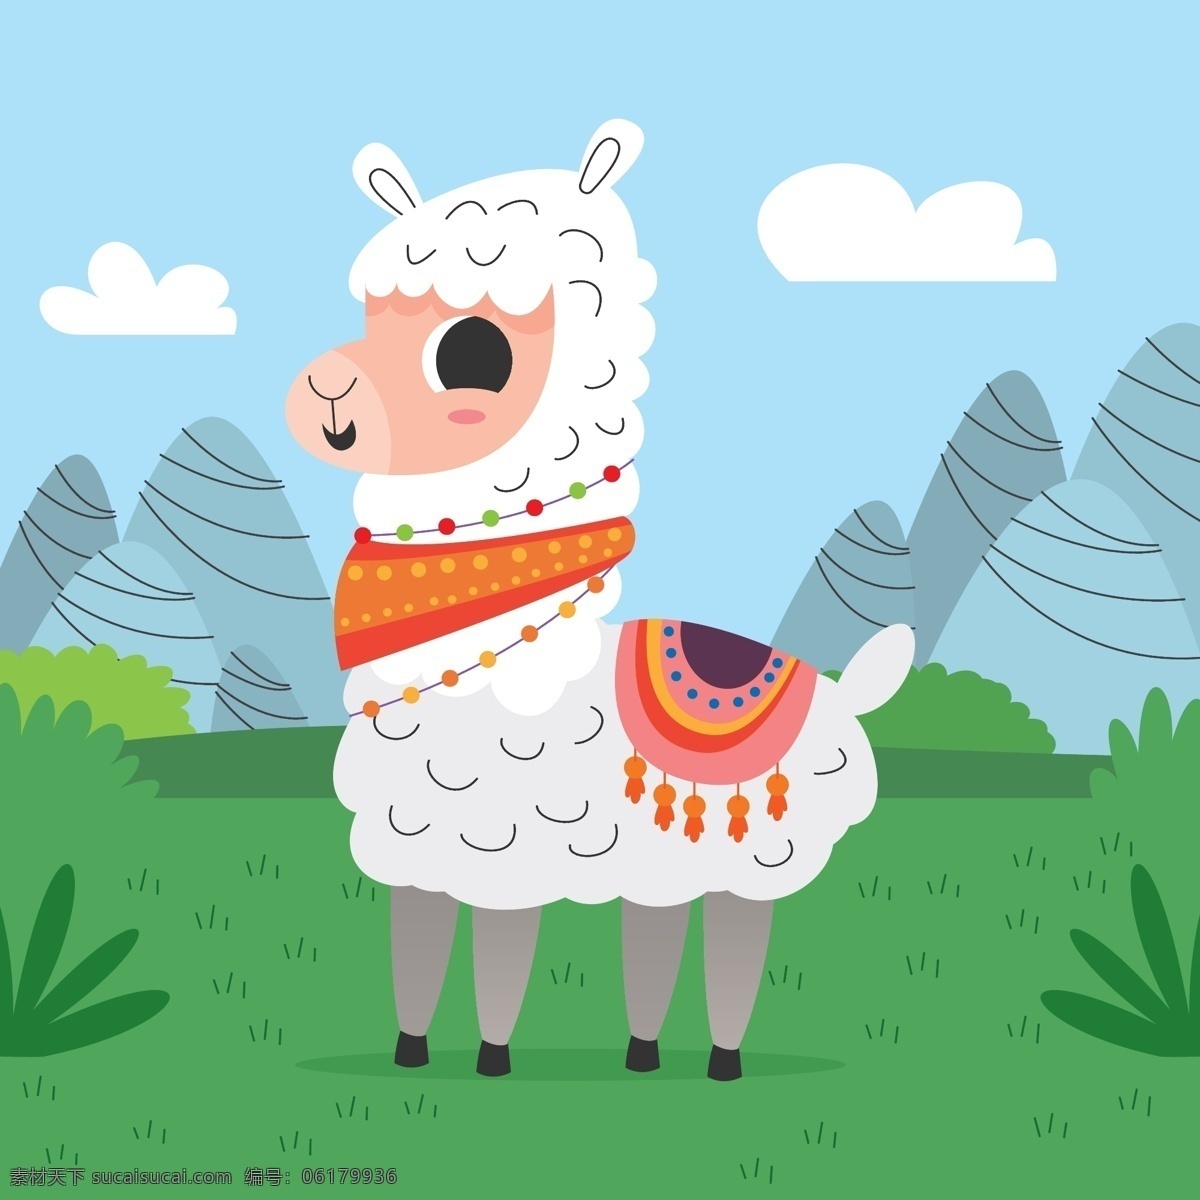 可爱羊驼 动物 可爱 引用 文本 背景 可爱的背景 羊毛 可爱的动物 行情 短语 羊驼 羊驼动物 可爱的羊驼 生物世界 野生动物